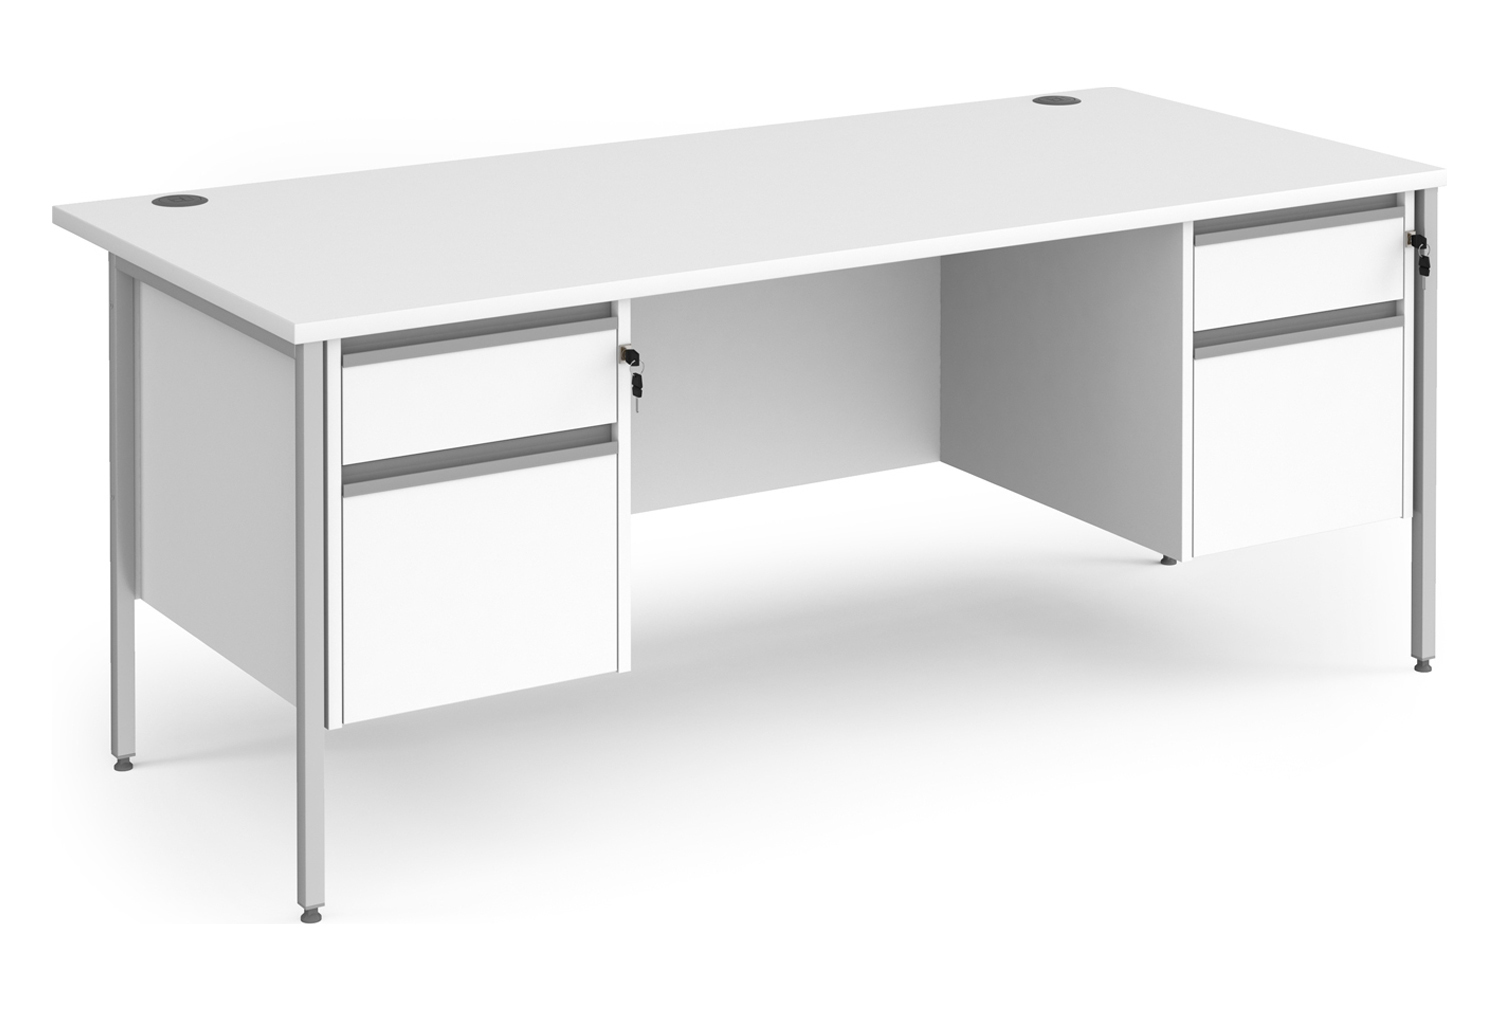 Value Line Classic+ Rectangular H-Leg Office Desk 2+2 Drawers (Silver Leg), 180wx80dx73h (cm), White, Fully Installed